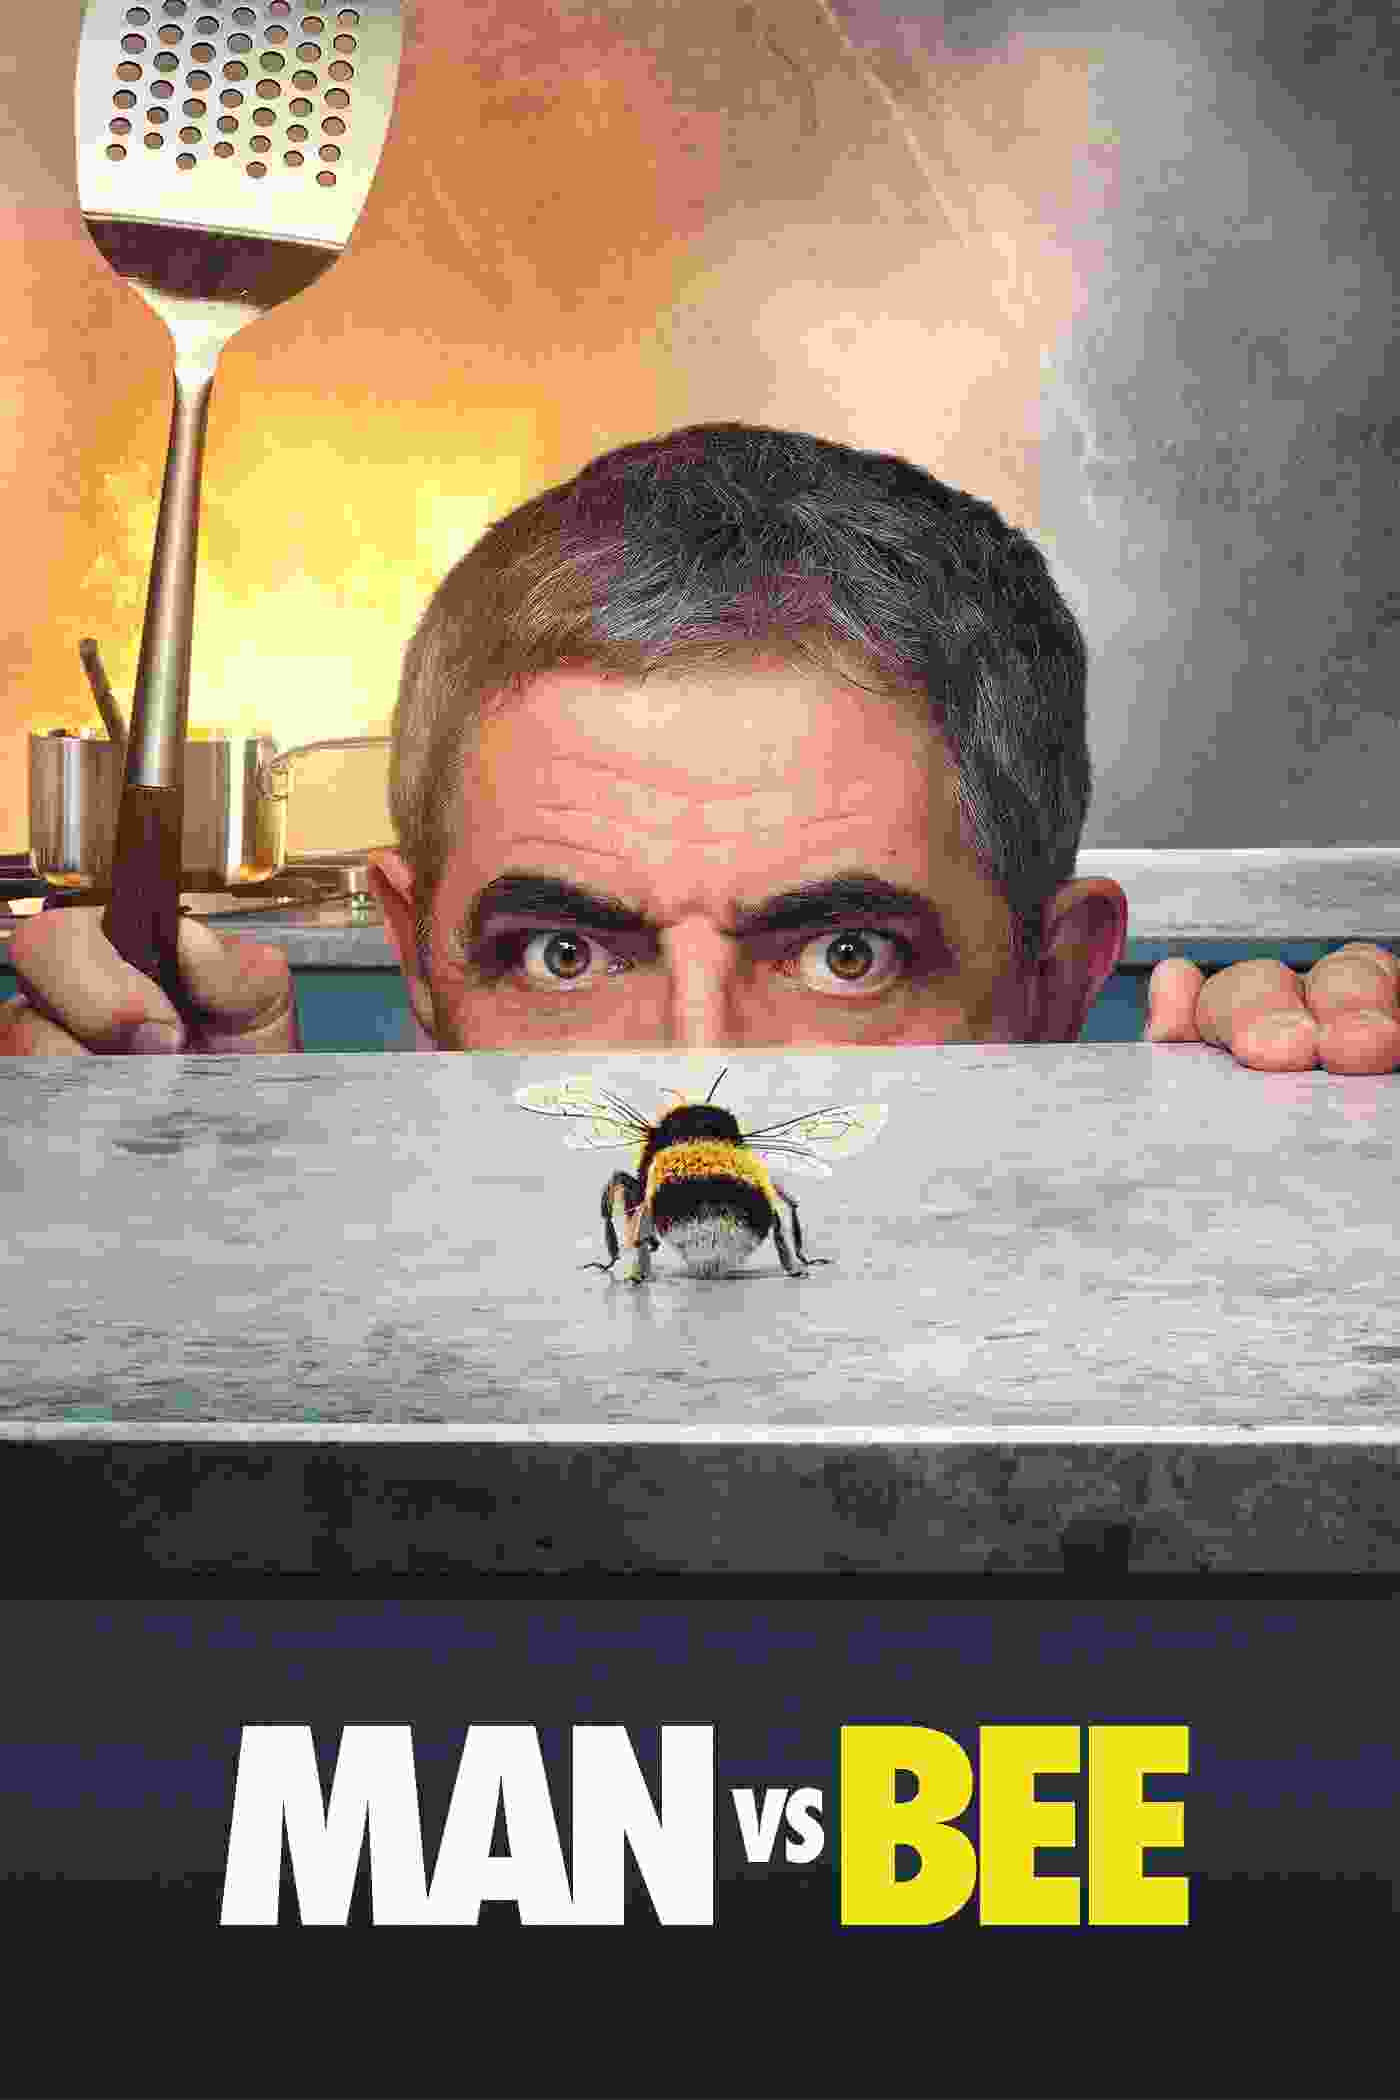 Man vs. Bee (TV Series 2022– ) vj kevo Rowan Atkinson